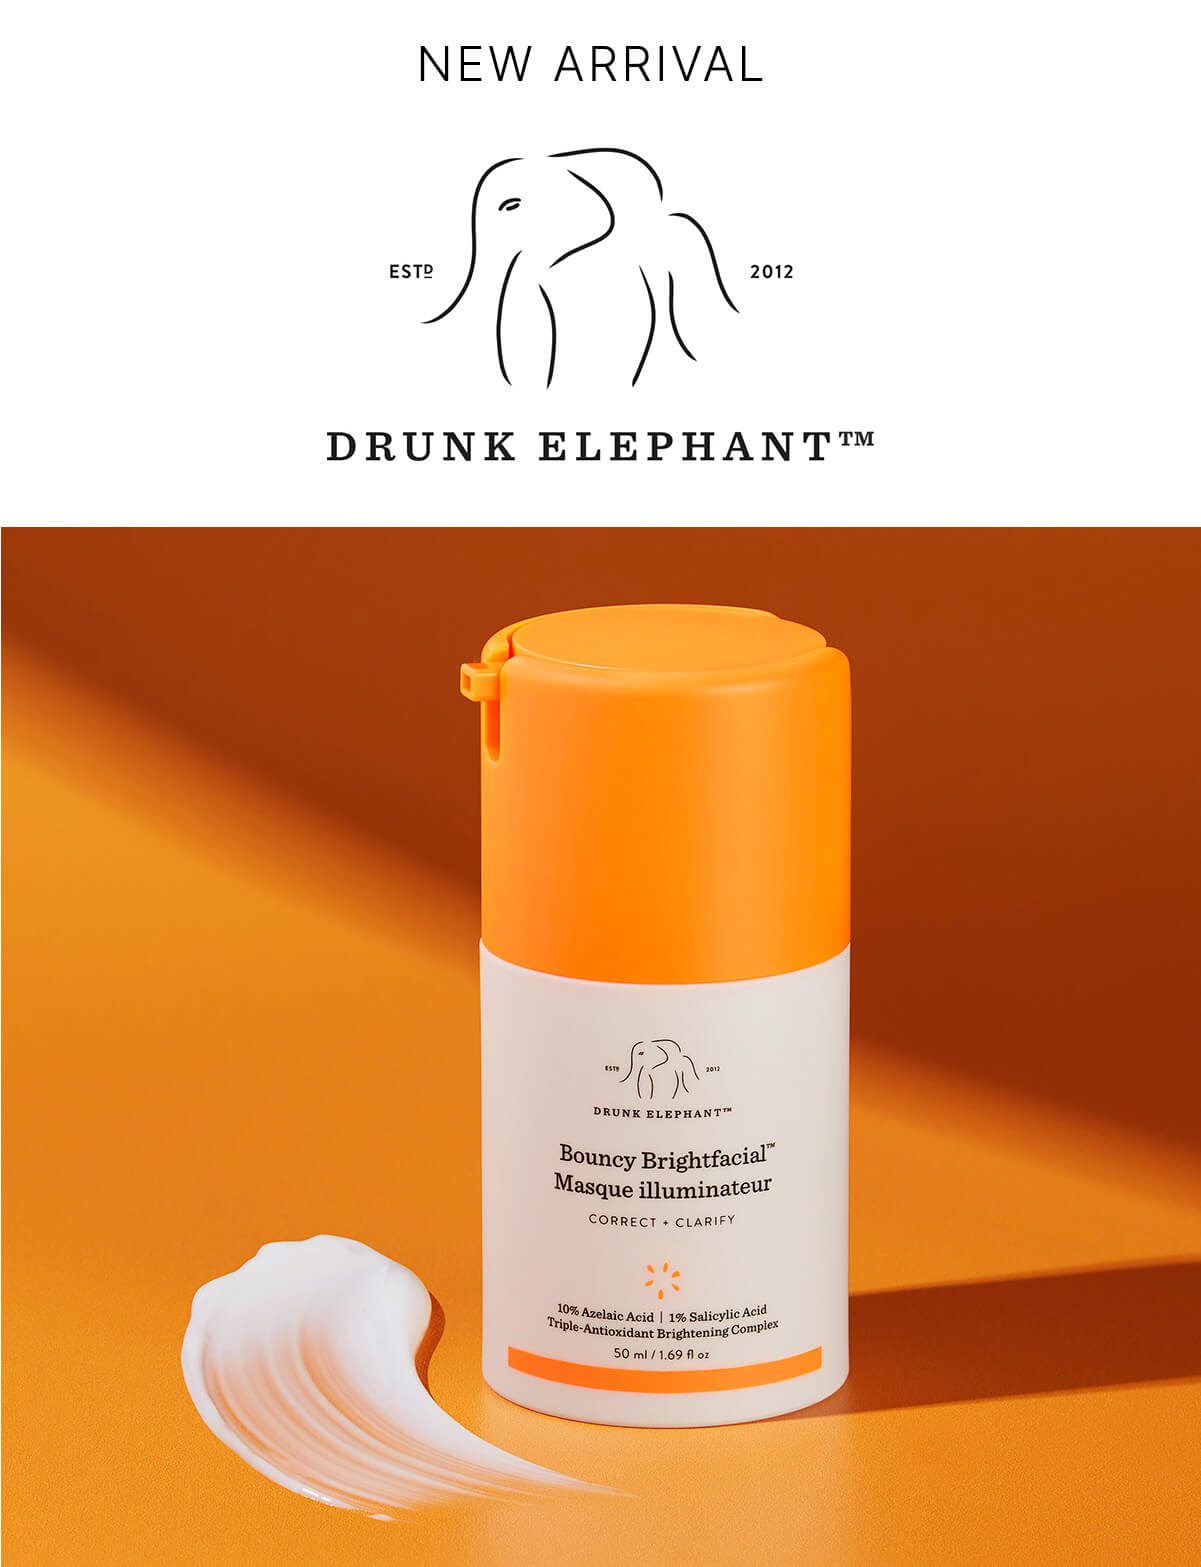 NEW ARRIVAL DRUNK ELEPHANT